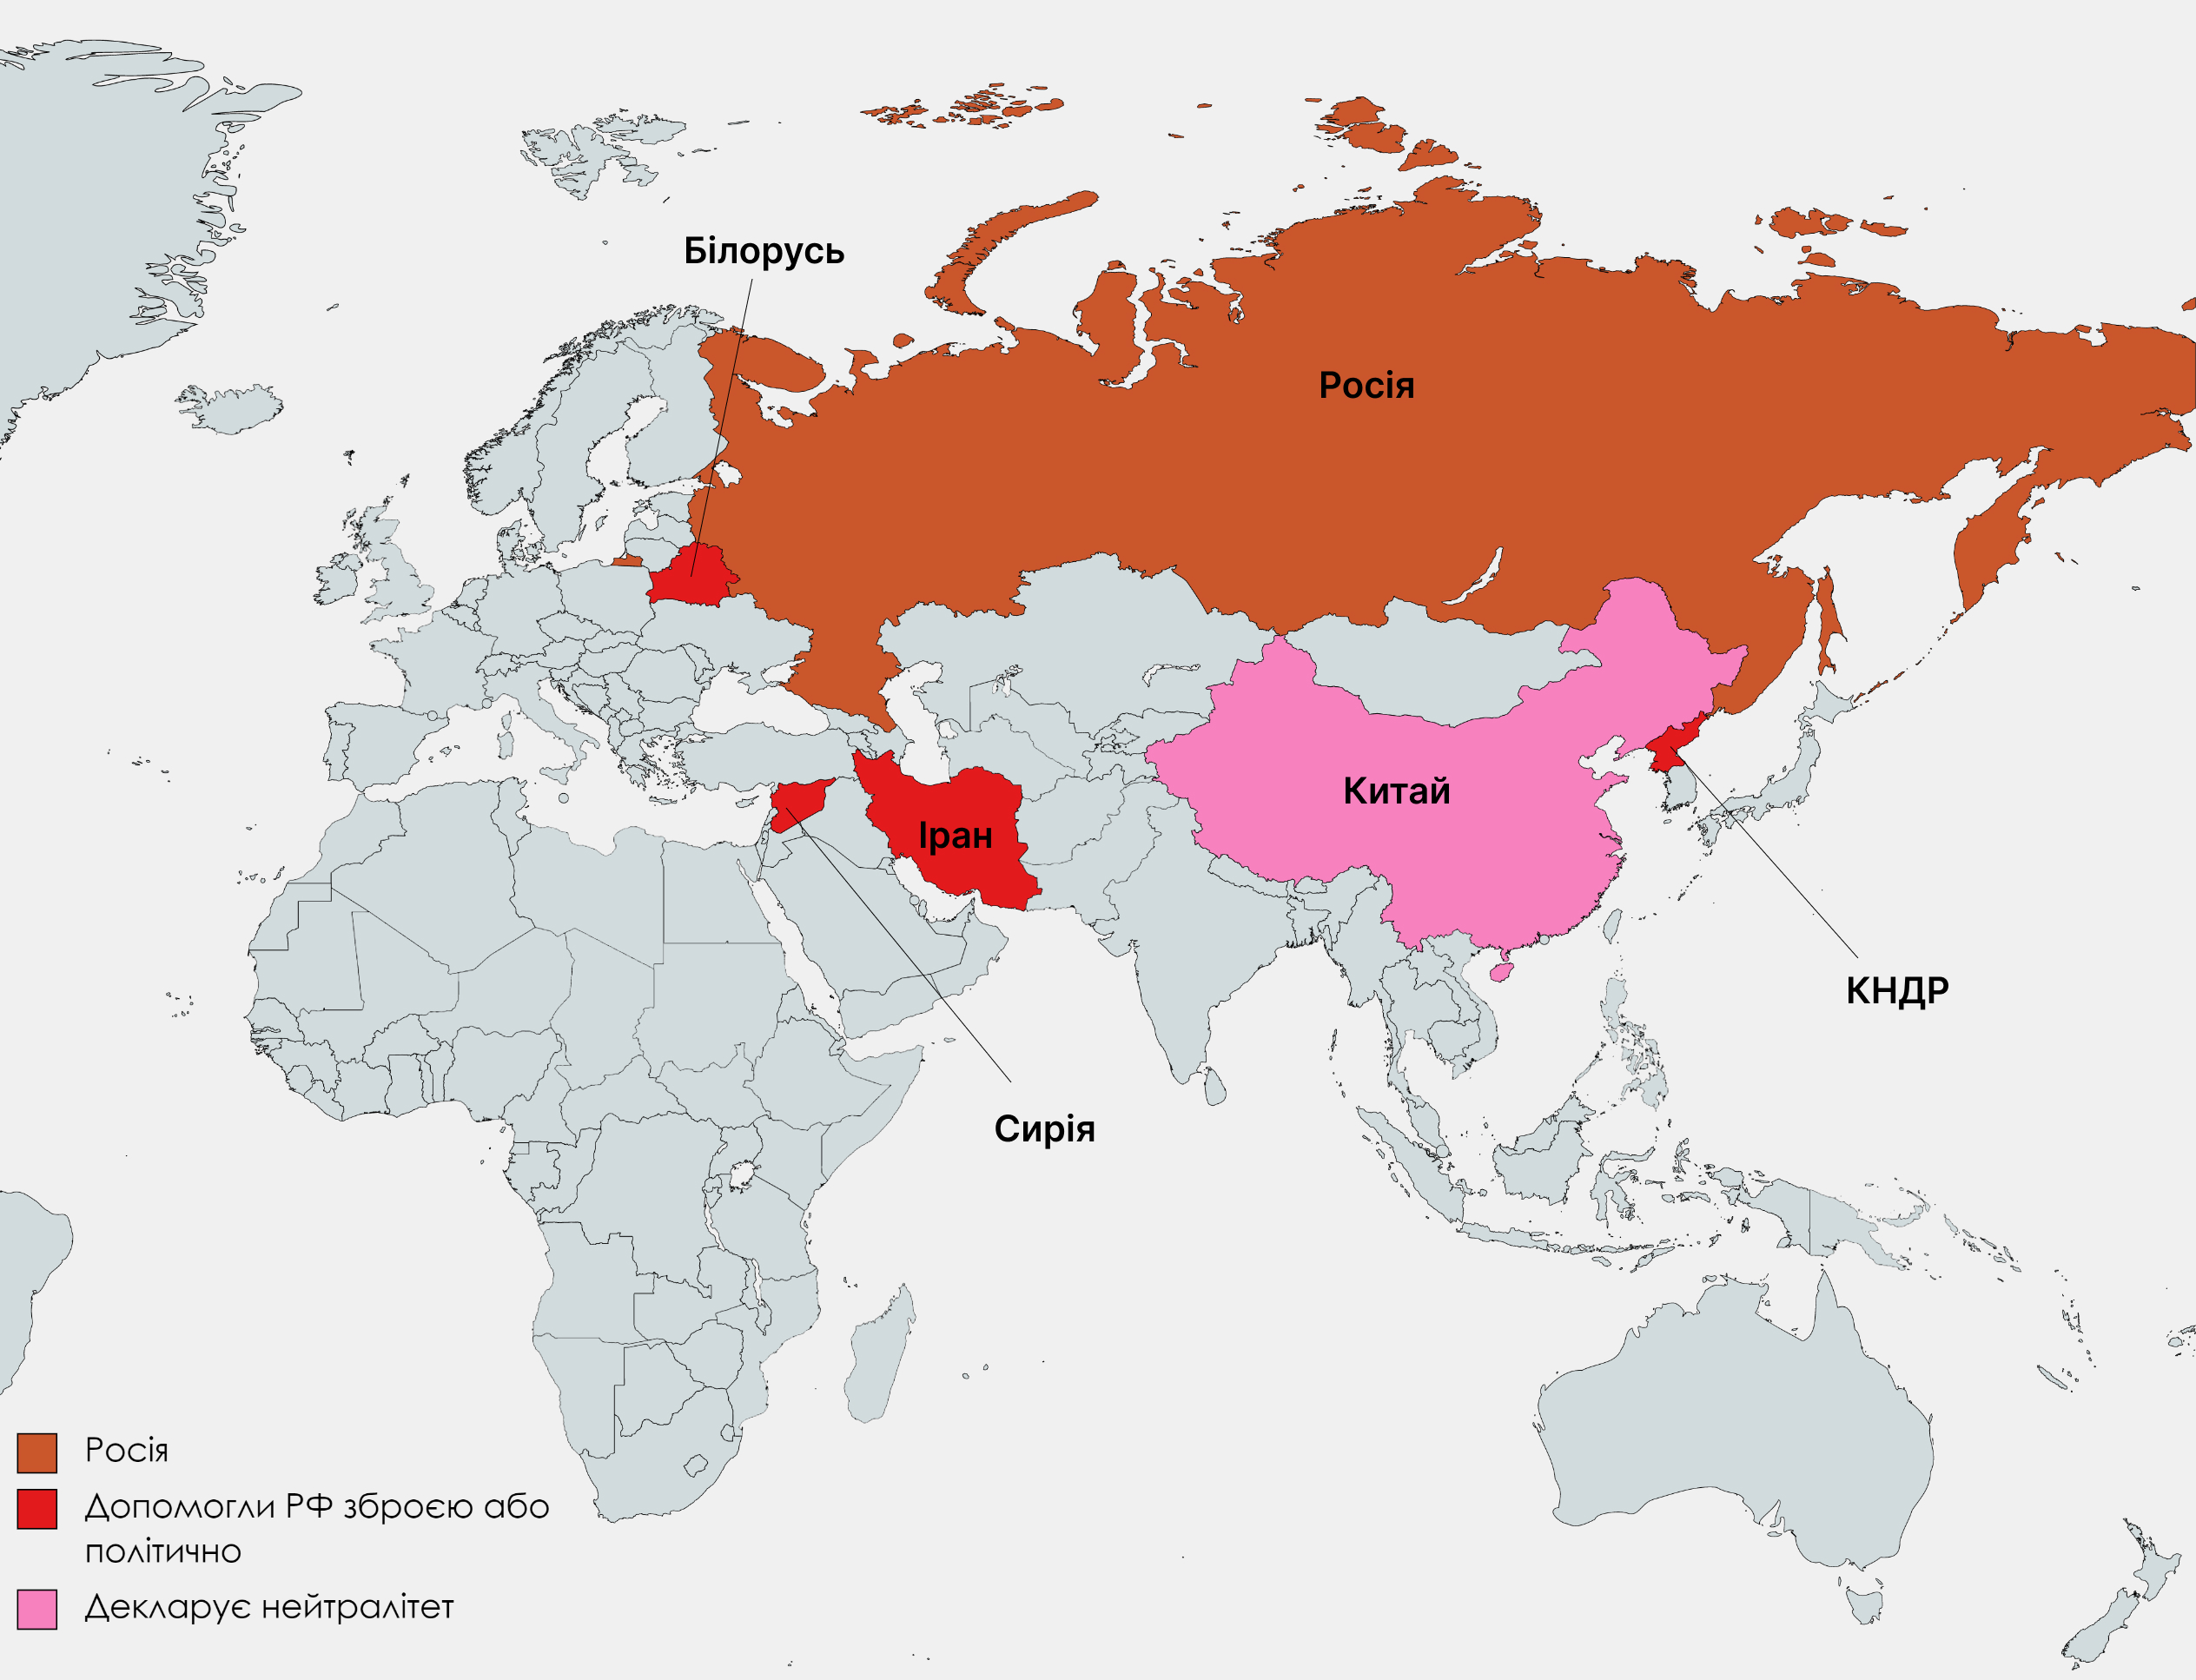 Іран, Сирія, КНДР, Китай, Росія. Чи загрожує світу нова "вісь зла"